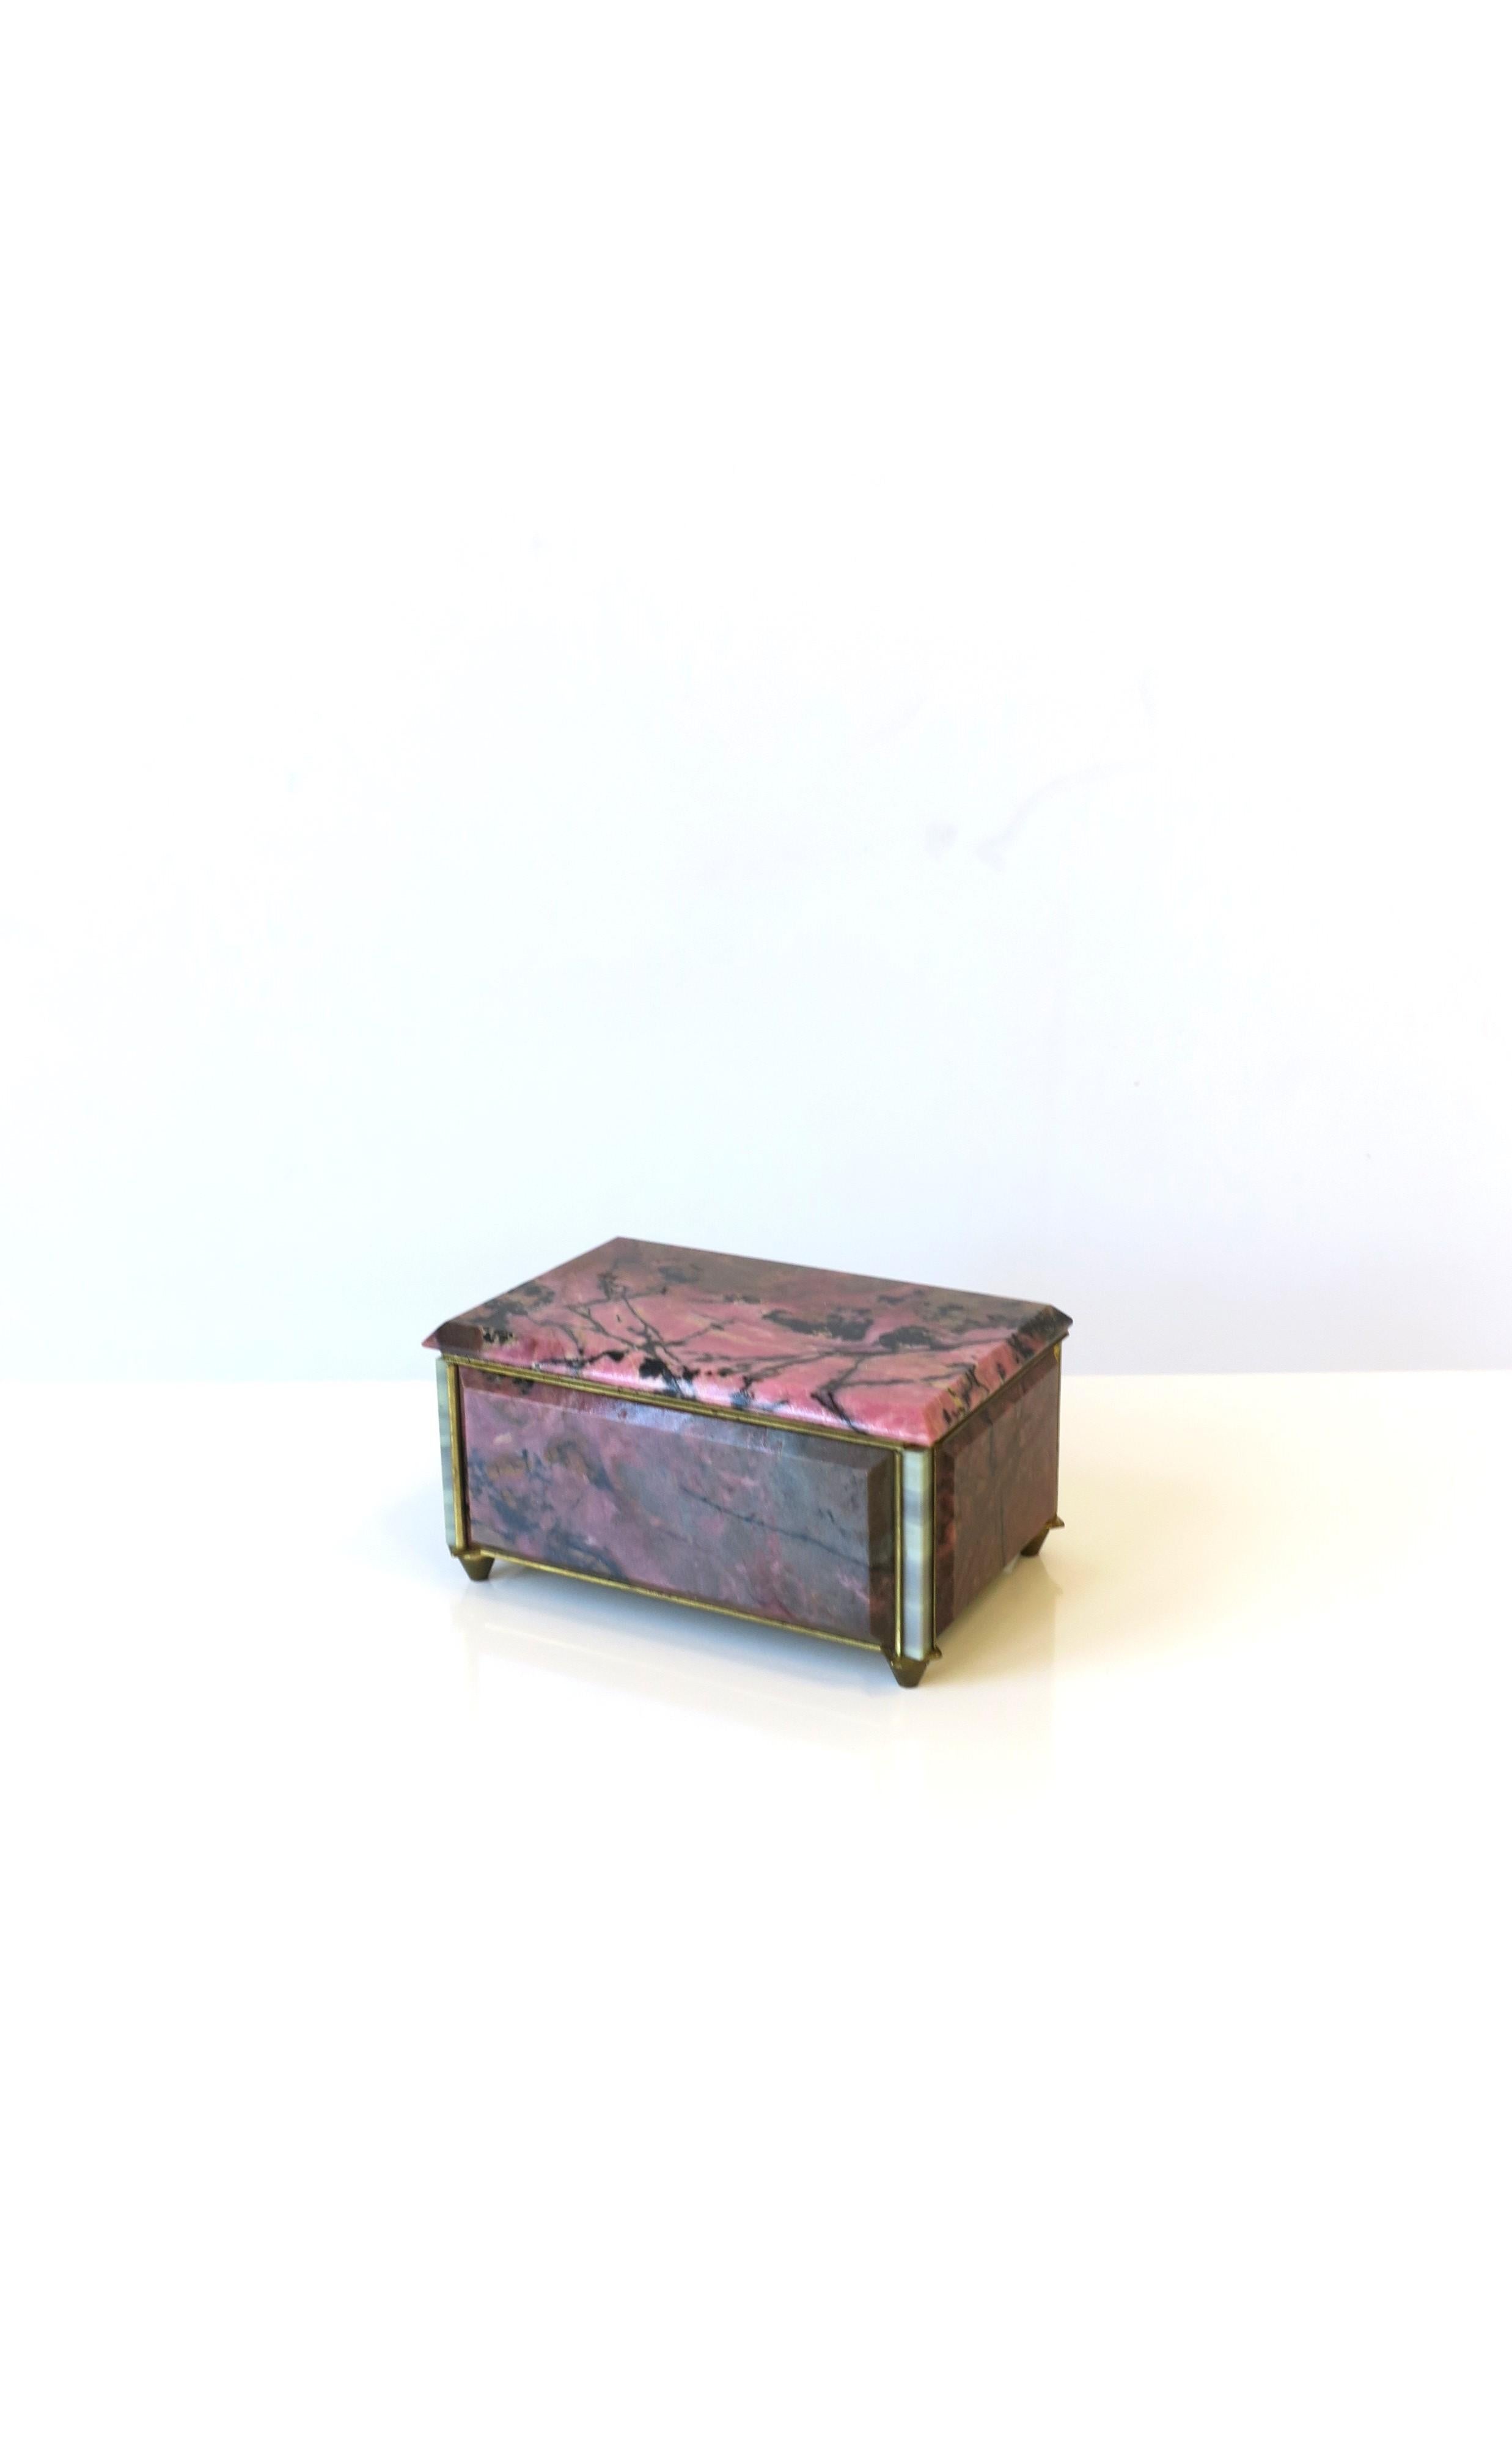 Très belle et rare boîte à bijoux en quartz rose et noir rhodonite avec cadre en bronze et intérieur en velours bleu nuit, vers le début du XXe siècle, Europe. La boîte est en rhodonite rose et noire avec des coins en onyx blanc, entourée d'un cadre